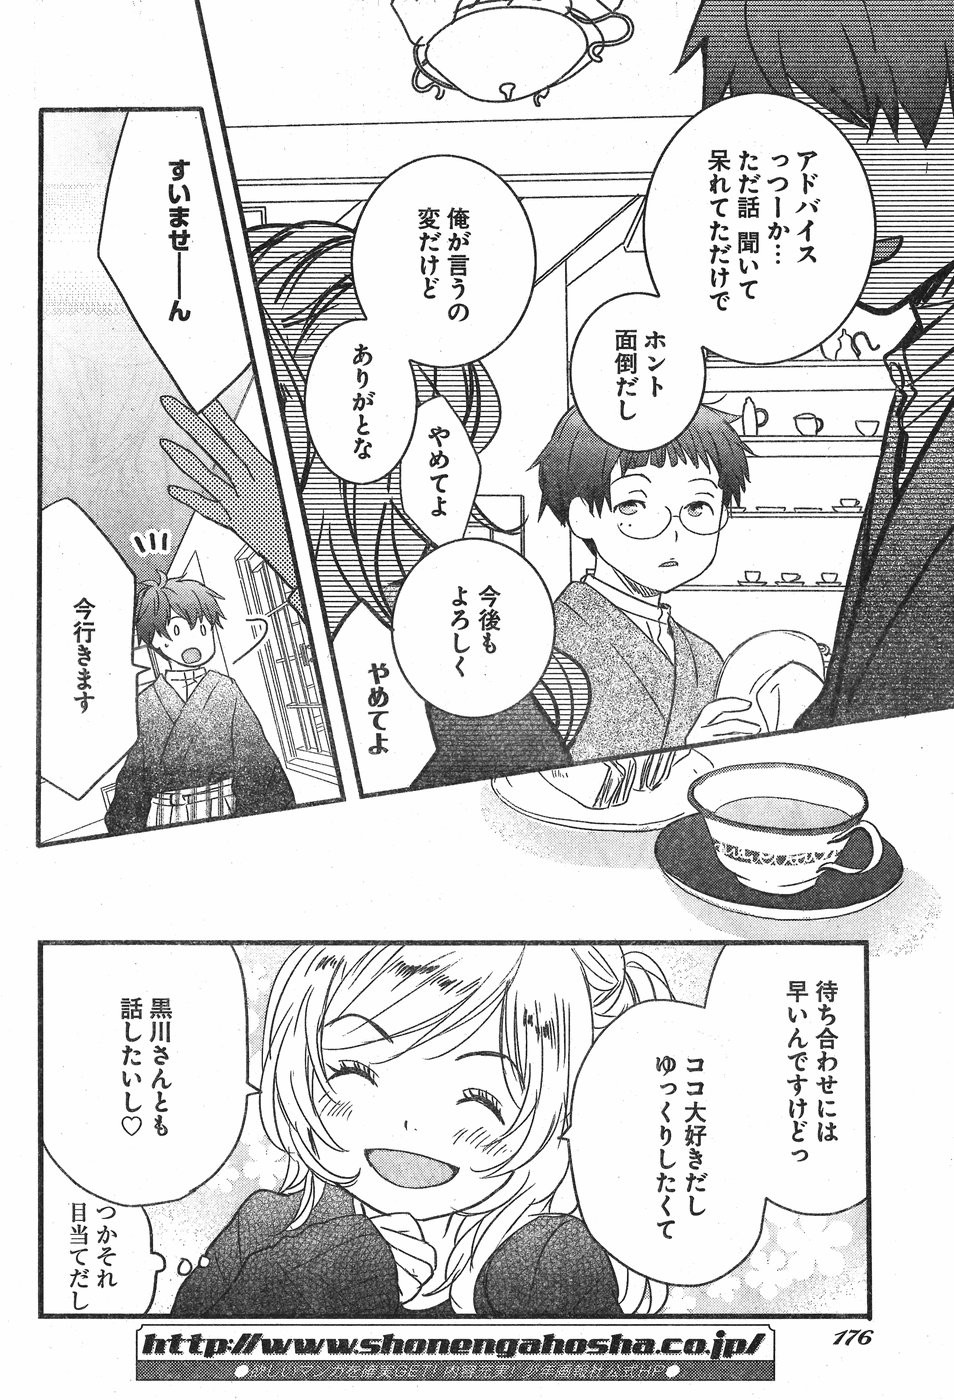 Bokura wa Minna Kawaisou - Chapter 84 - Page 4